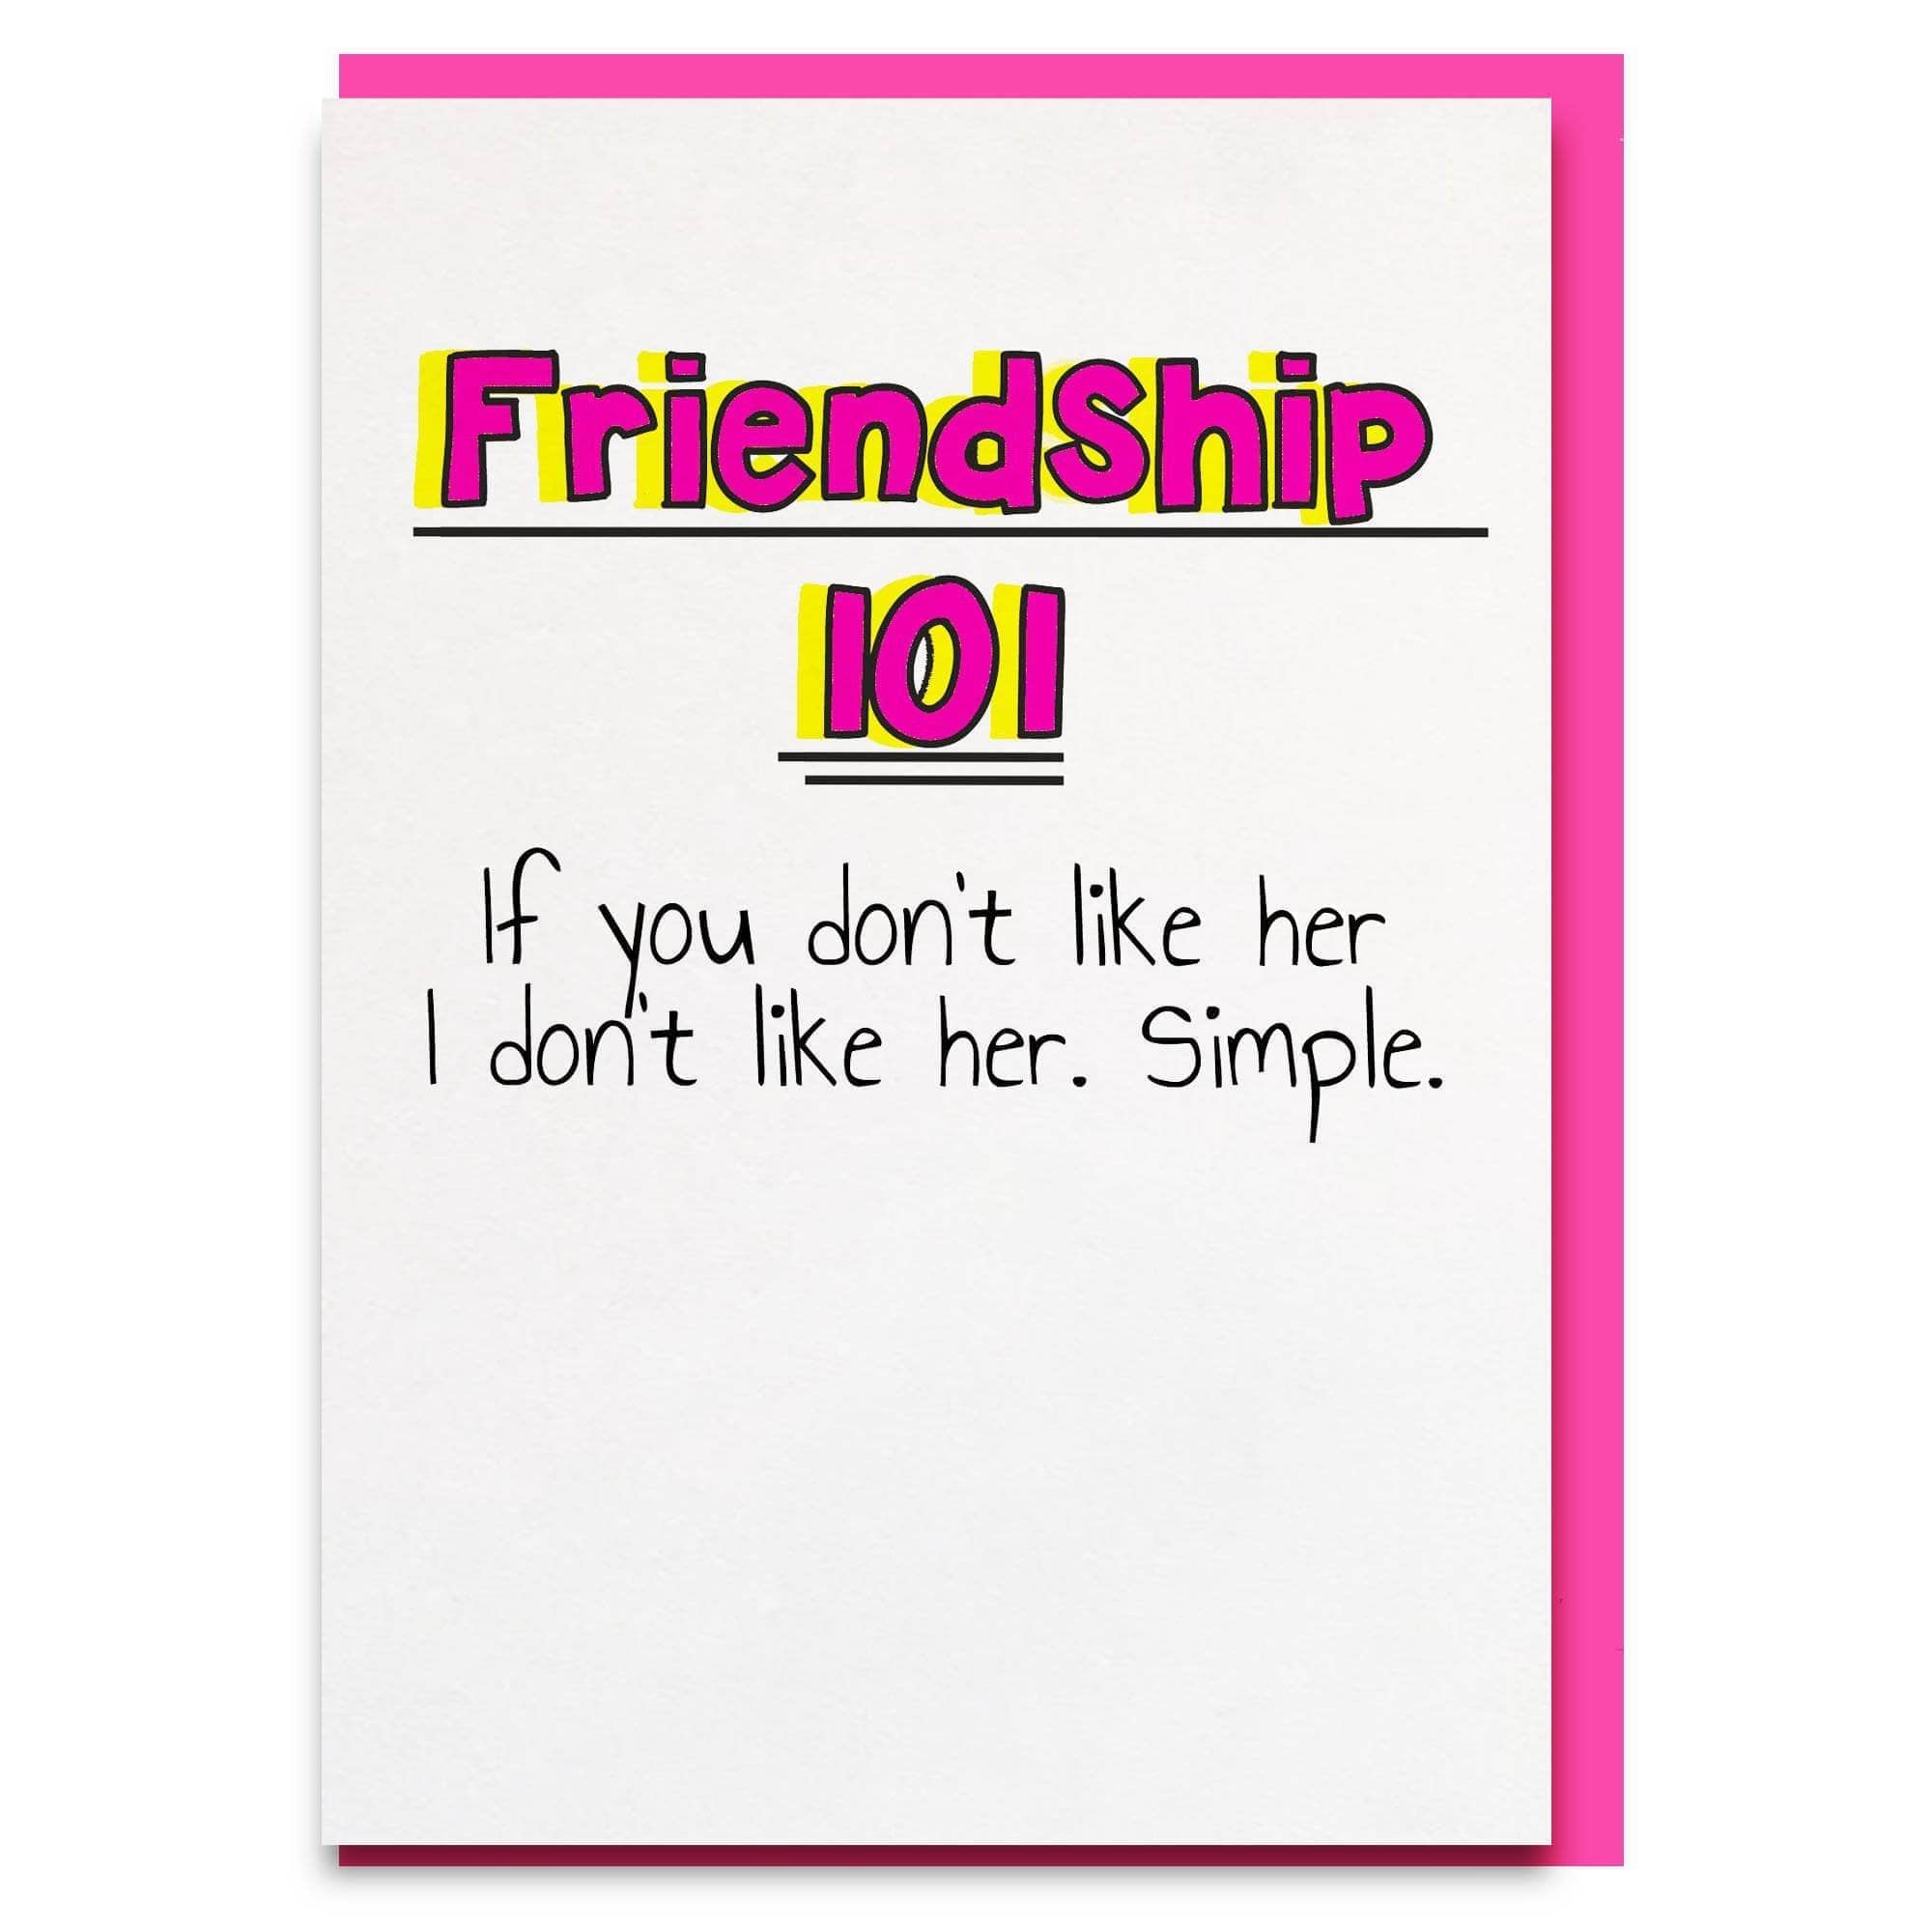 Friendship 101